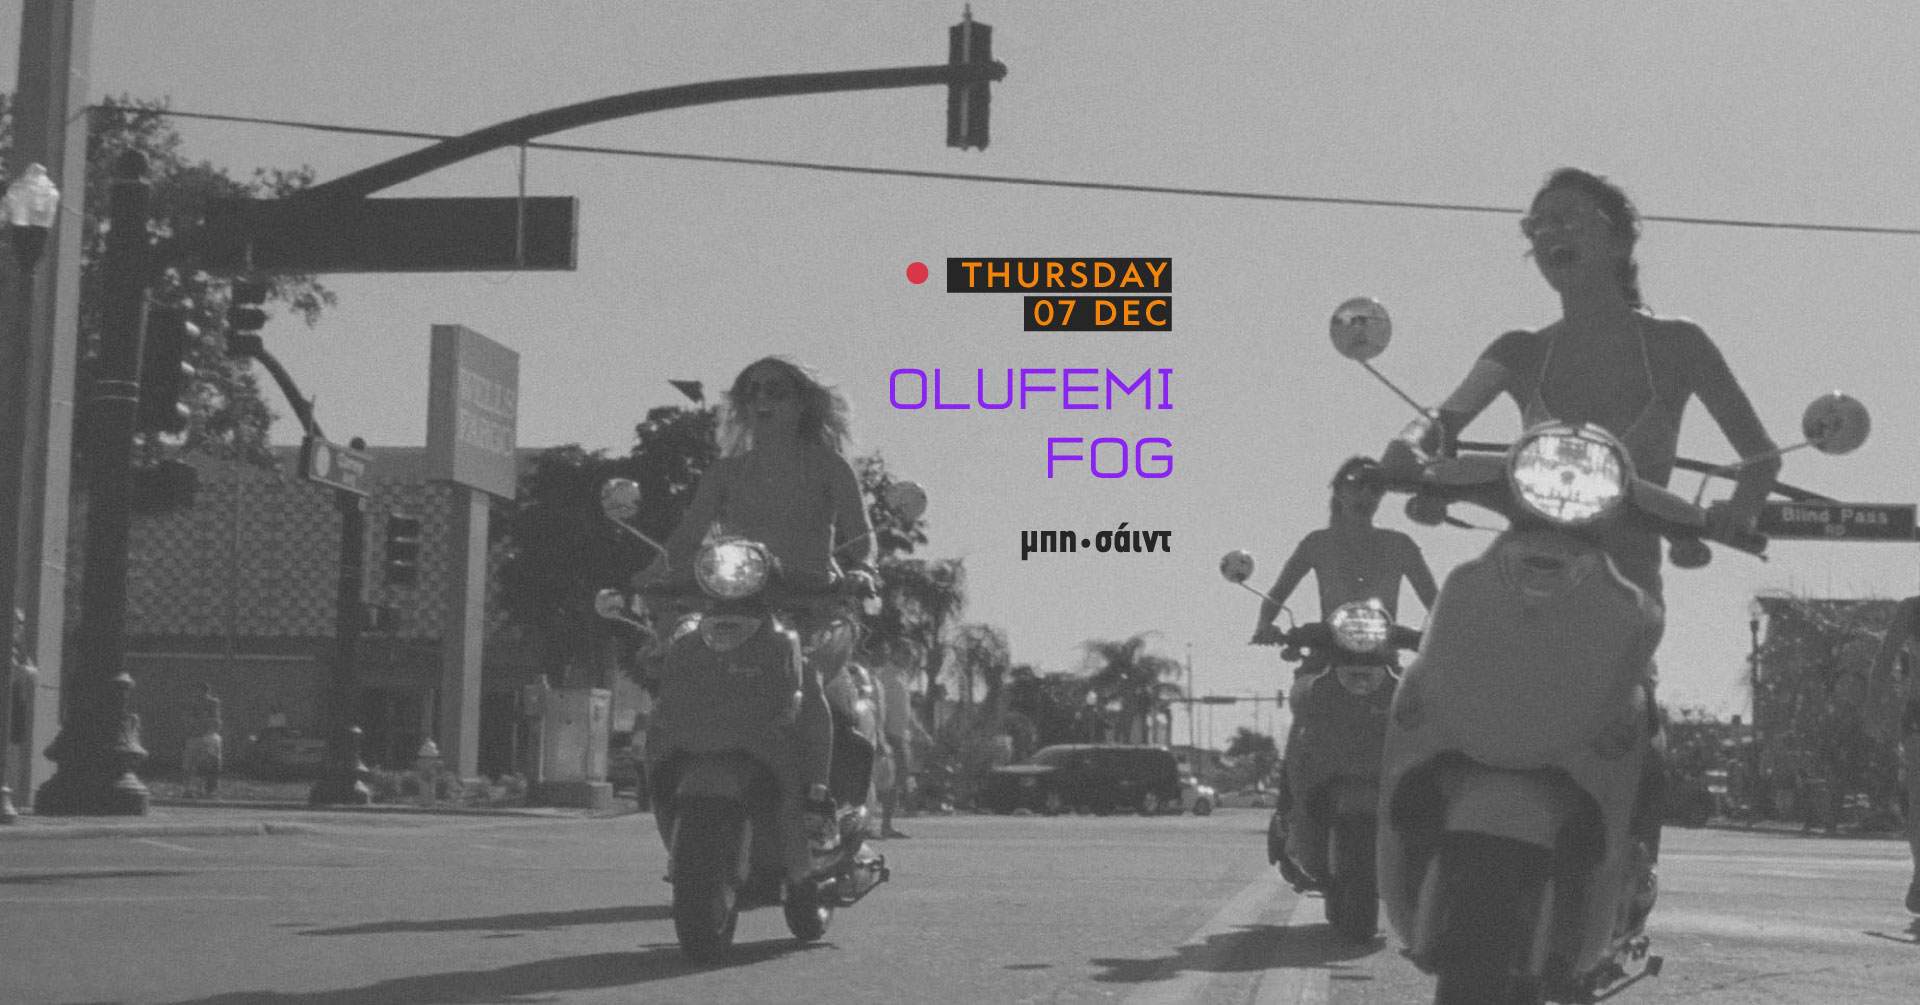 Olufemi /.Fog - フライヤー表